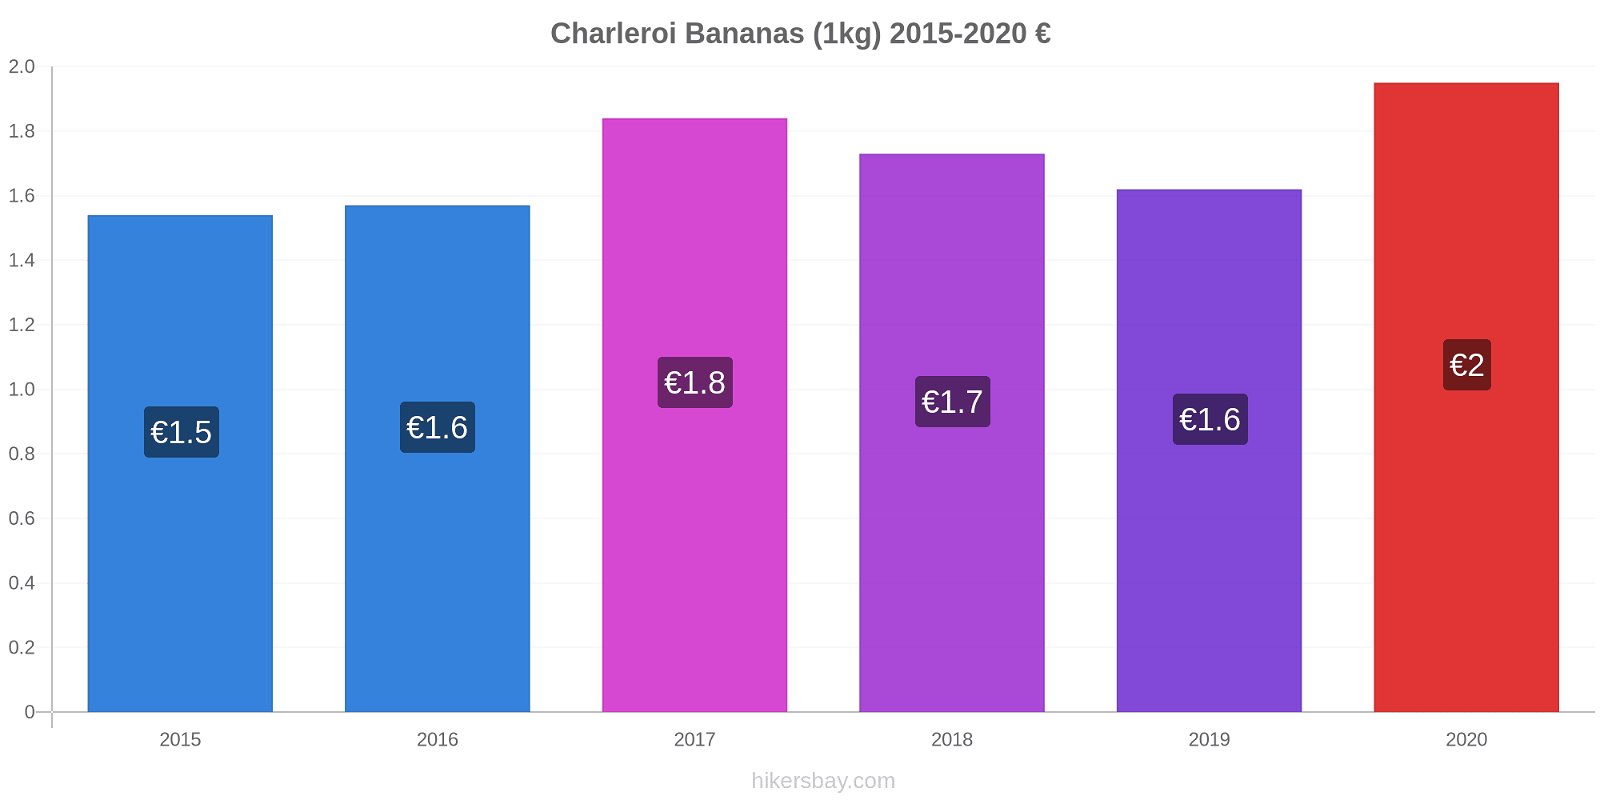 Charleroi variação de preço Banana (1kg) hikersbay.com